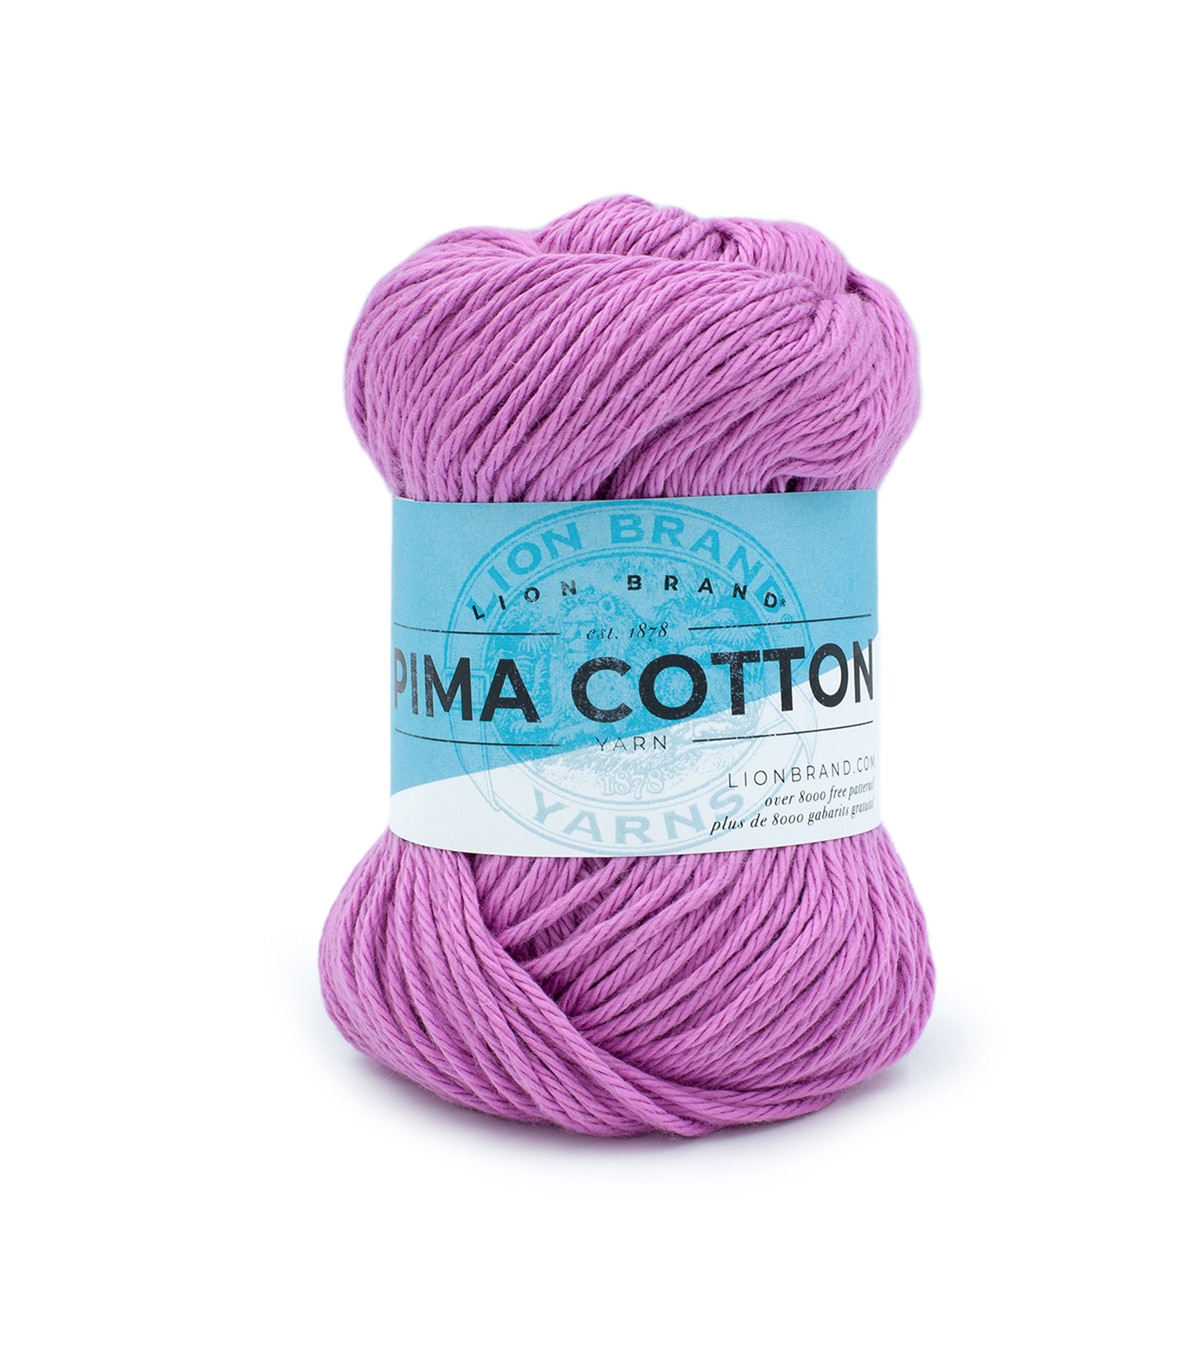 Lion Brand Pima Cotton Yarn | JOANN